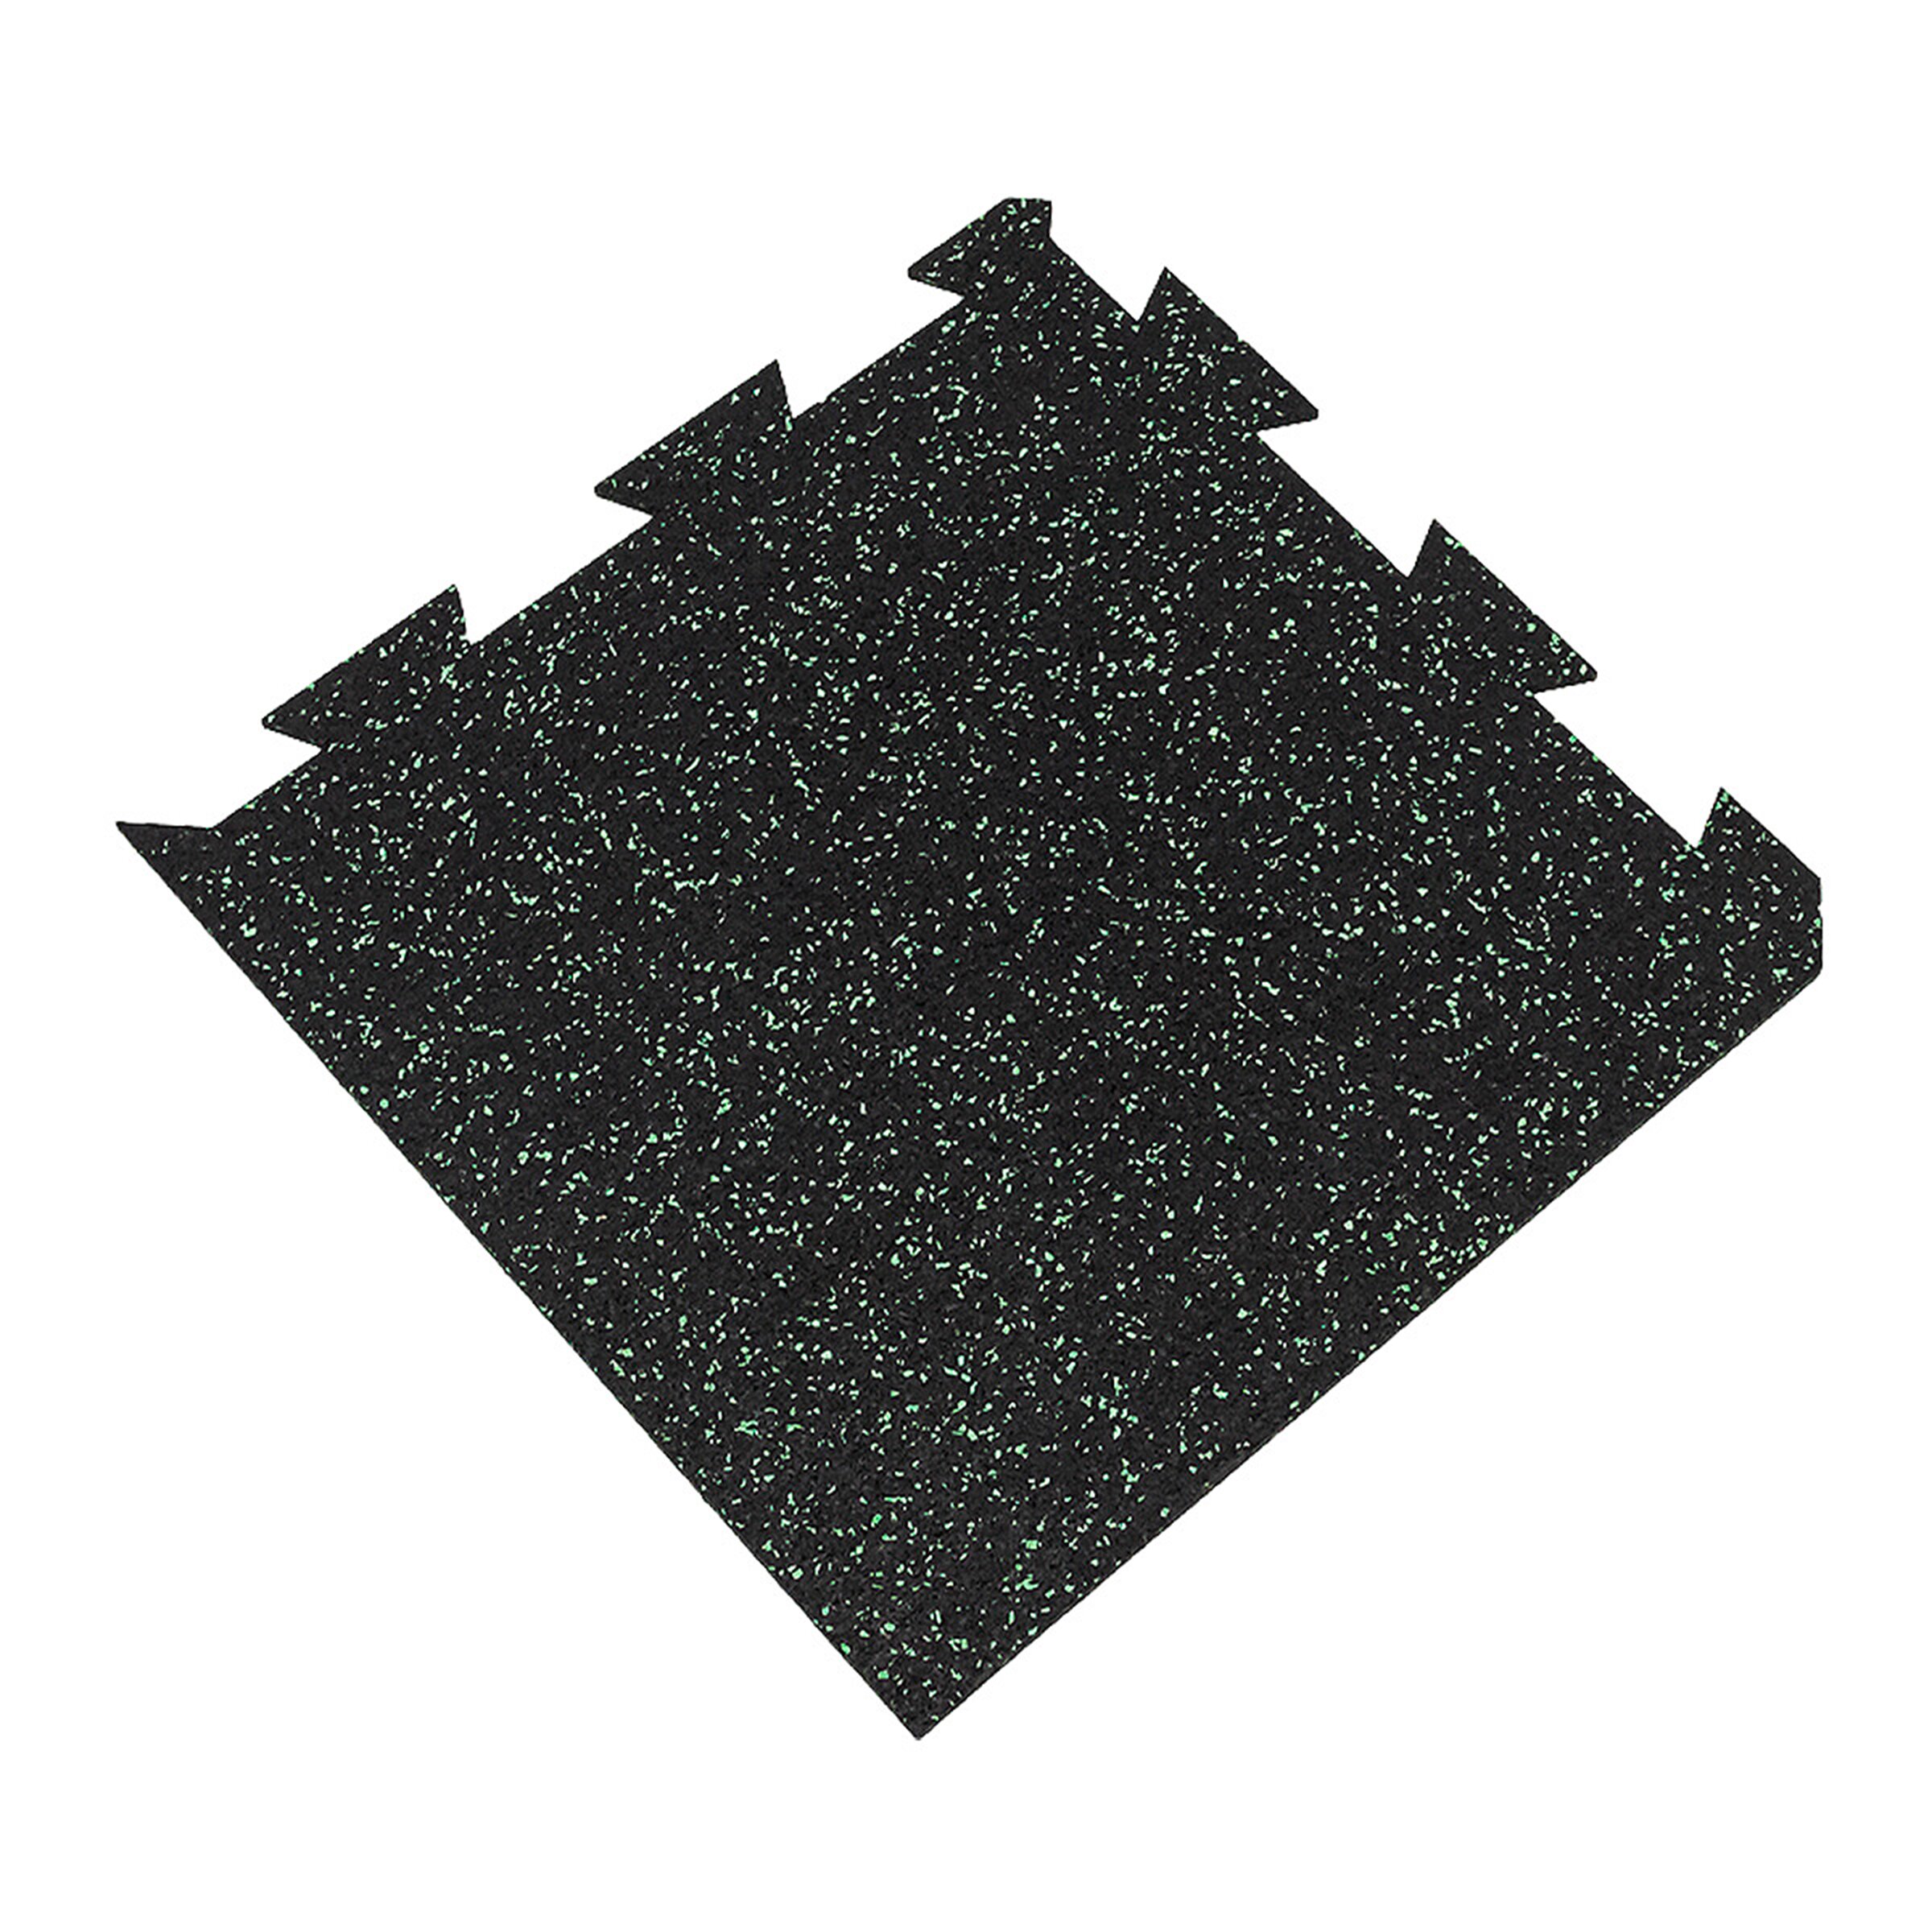 Černo-zelená podlahová guma FLOMA FitFlo SF1050 - délka 50 cm, šířka 50 cm, výška 1 cm